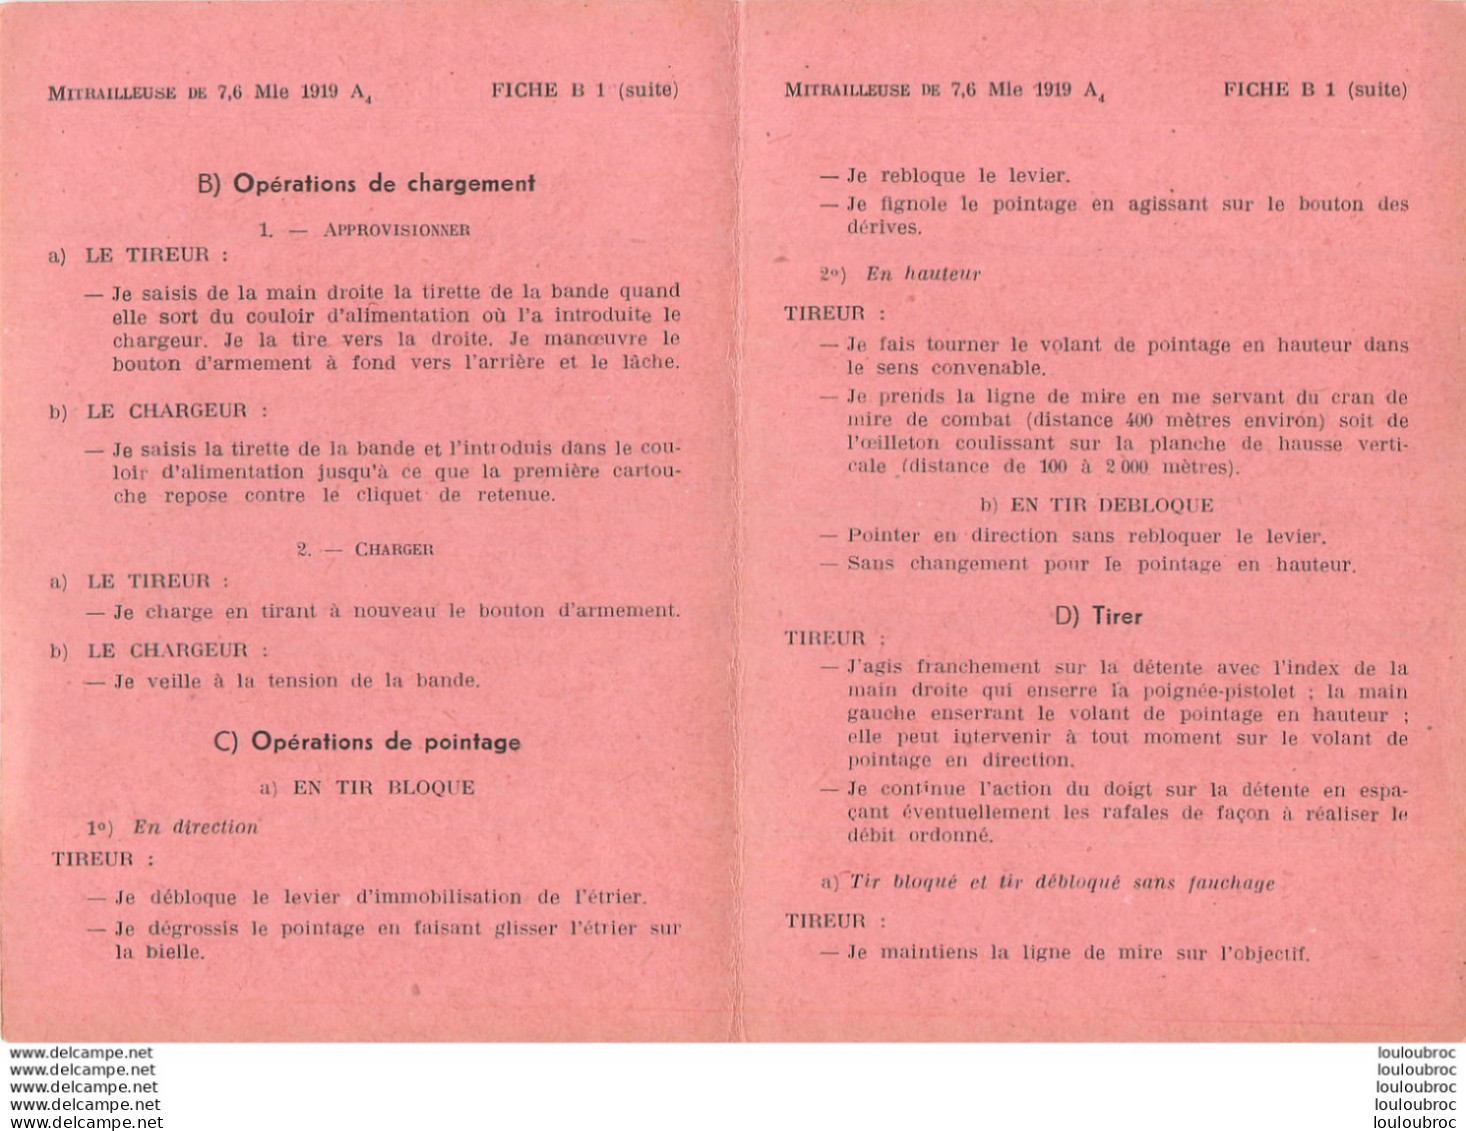 MITRAILLEUSE DE 7.6  MODELE 1919 A4 NOTICE COMPLETE AVEC TOUTES SES FICHES DE B1 A B7 - Decotatieve Wapens